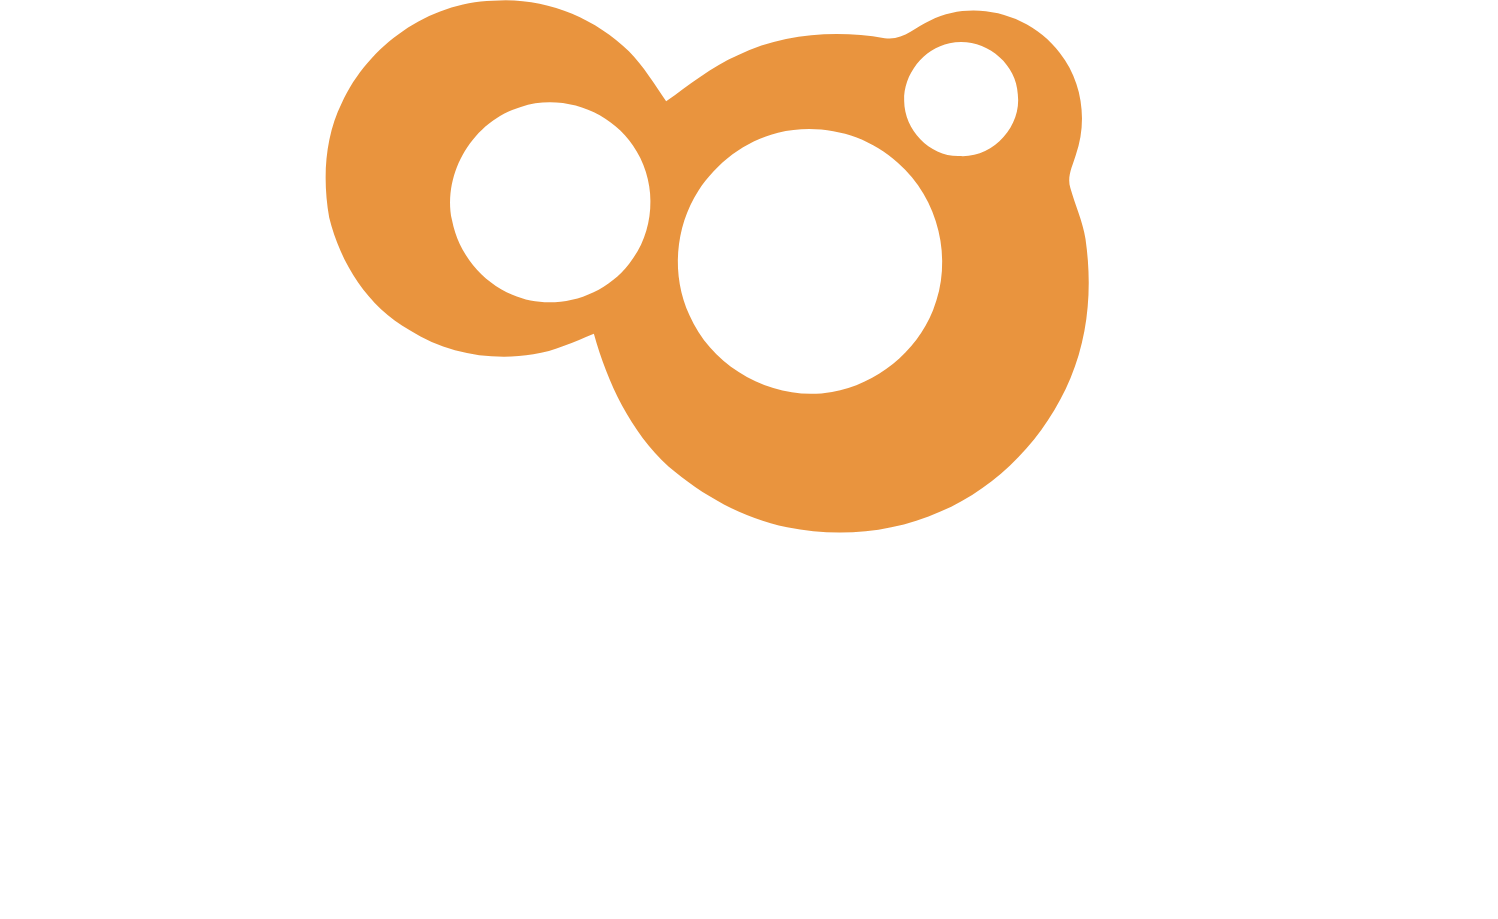 Imagineer logo large for dark backgrounds (transparent PNG)